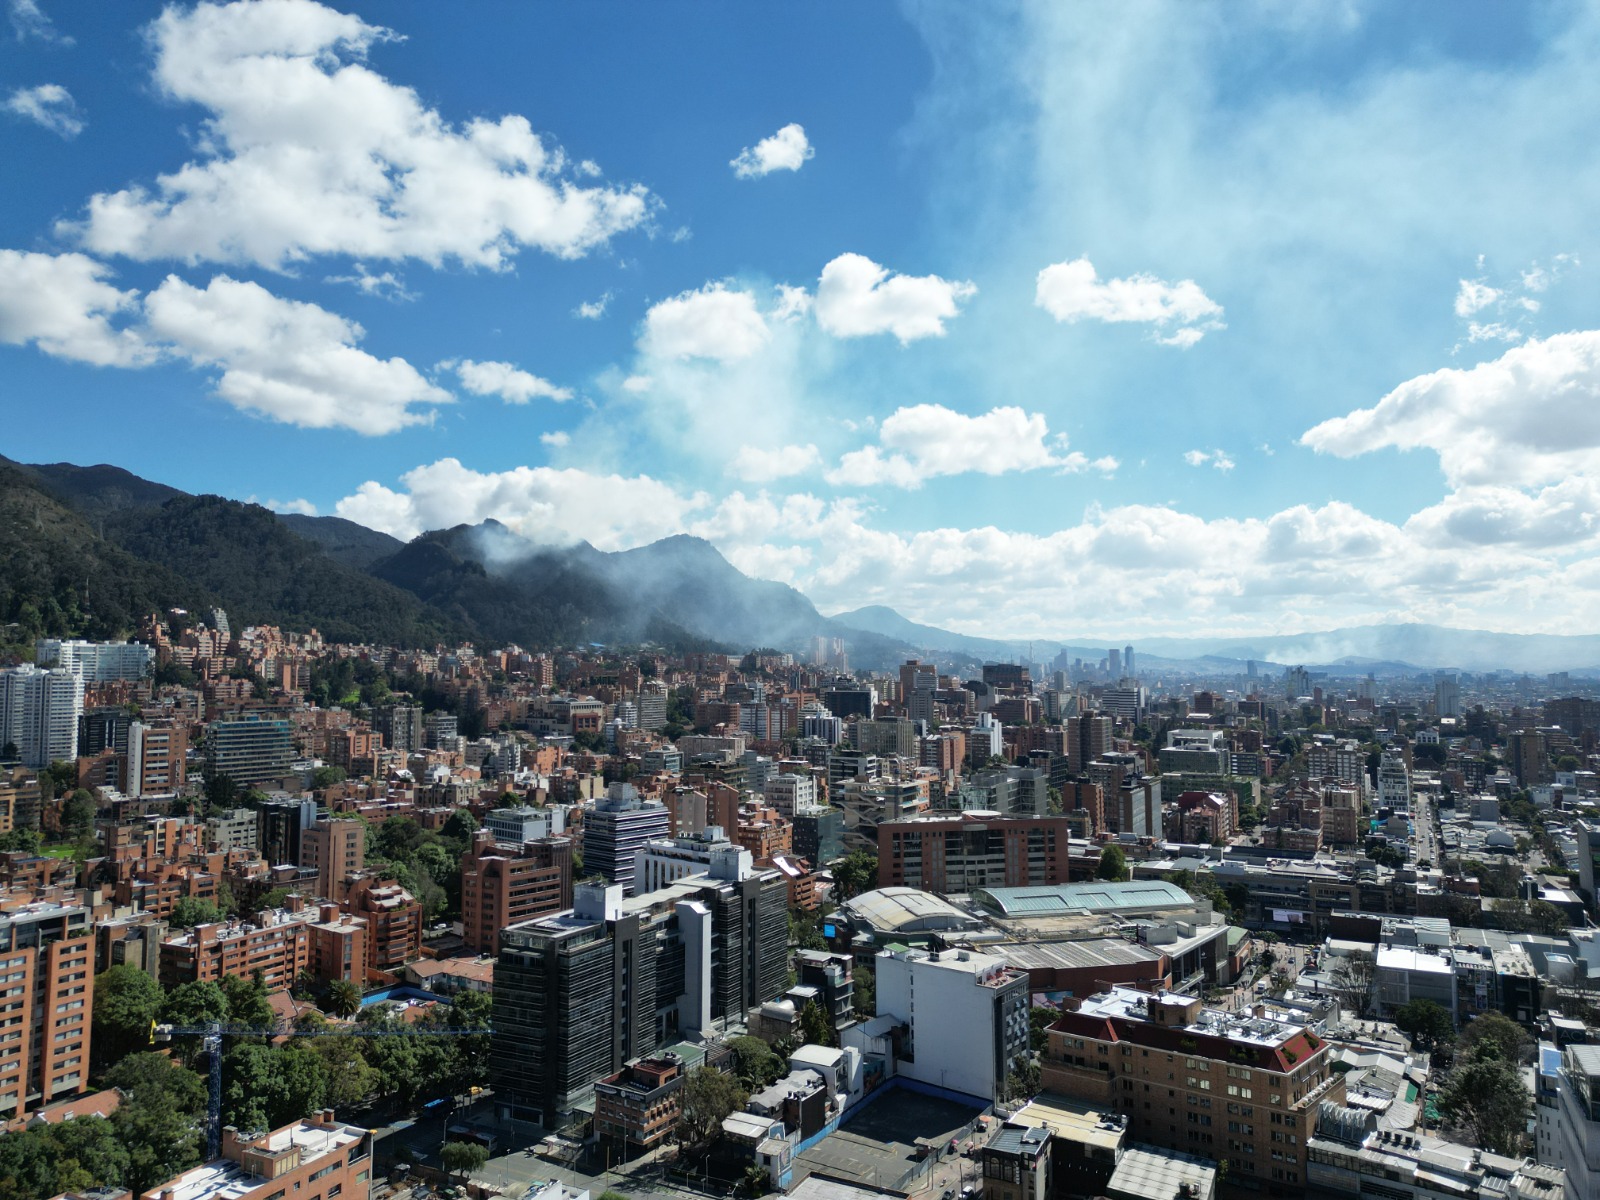 Incendio en Bogotá podría afectar las operaciones del Aeropuerto El Dorado, alerta Aeronáutica Civil.